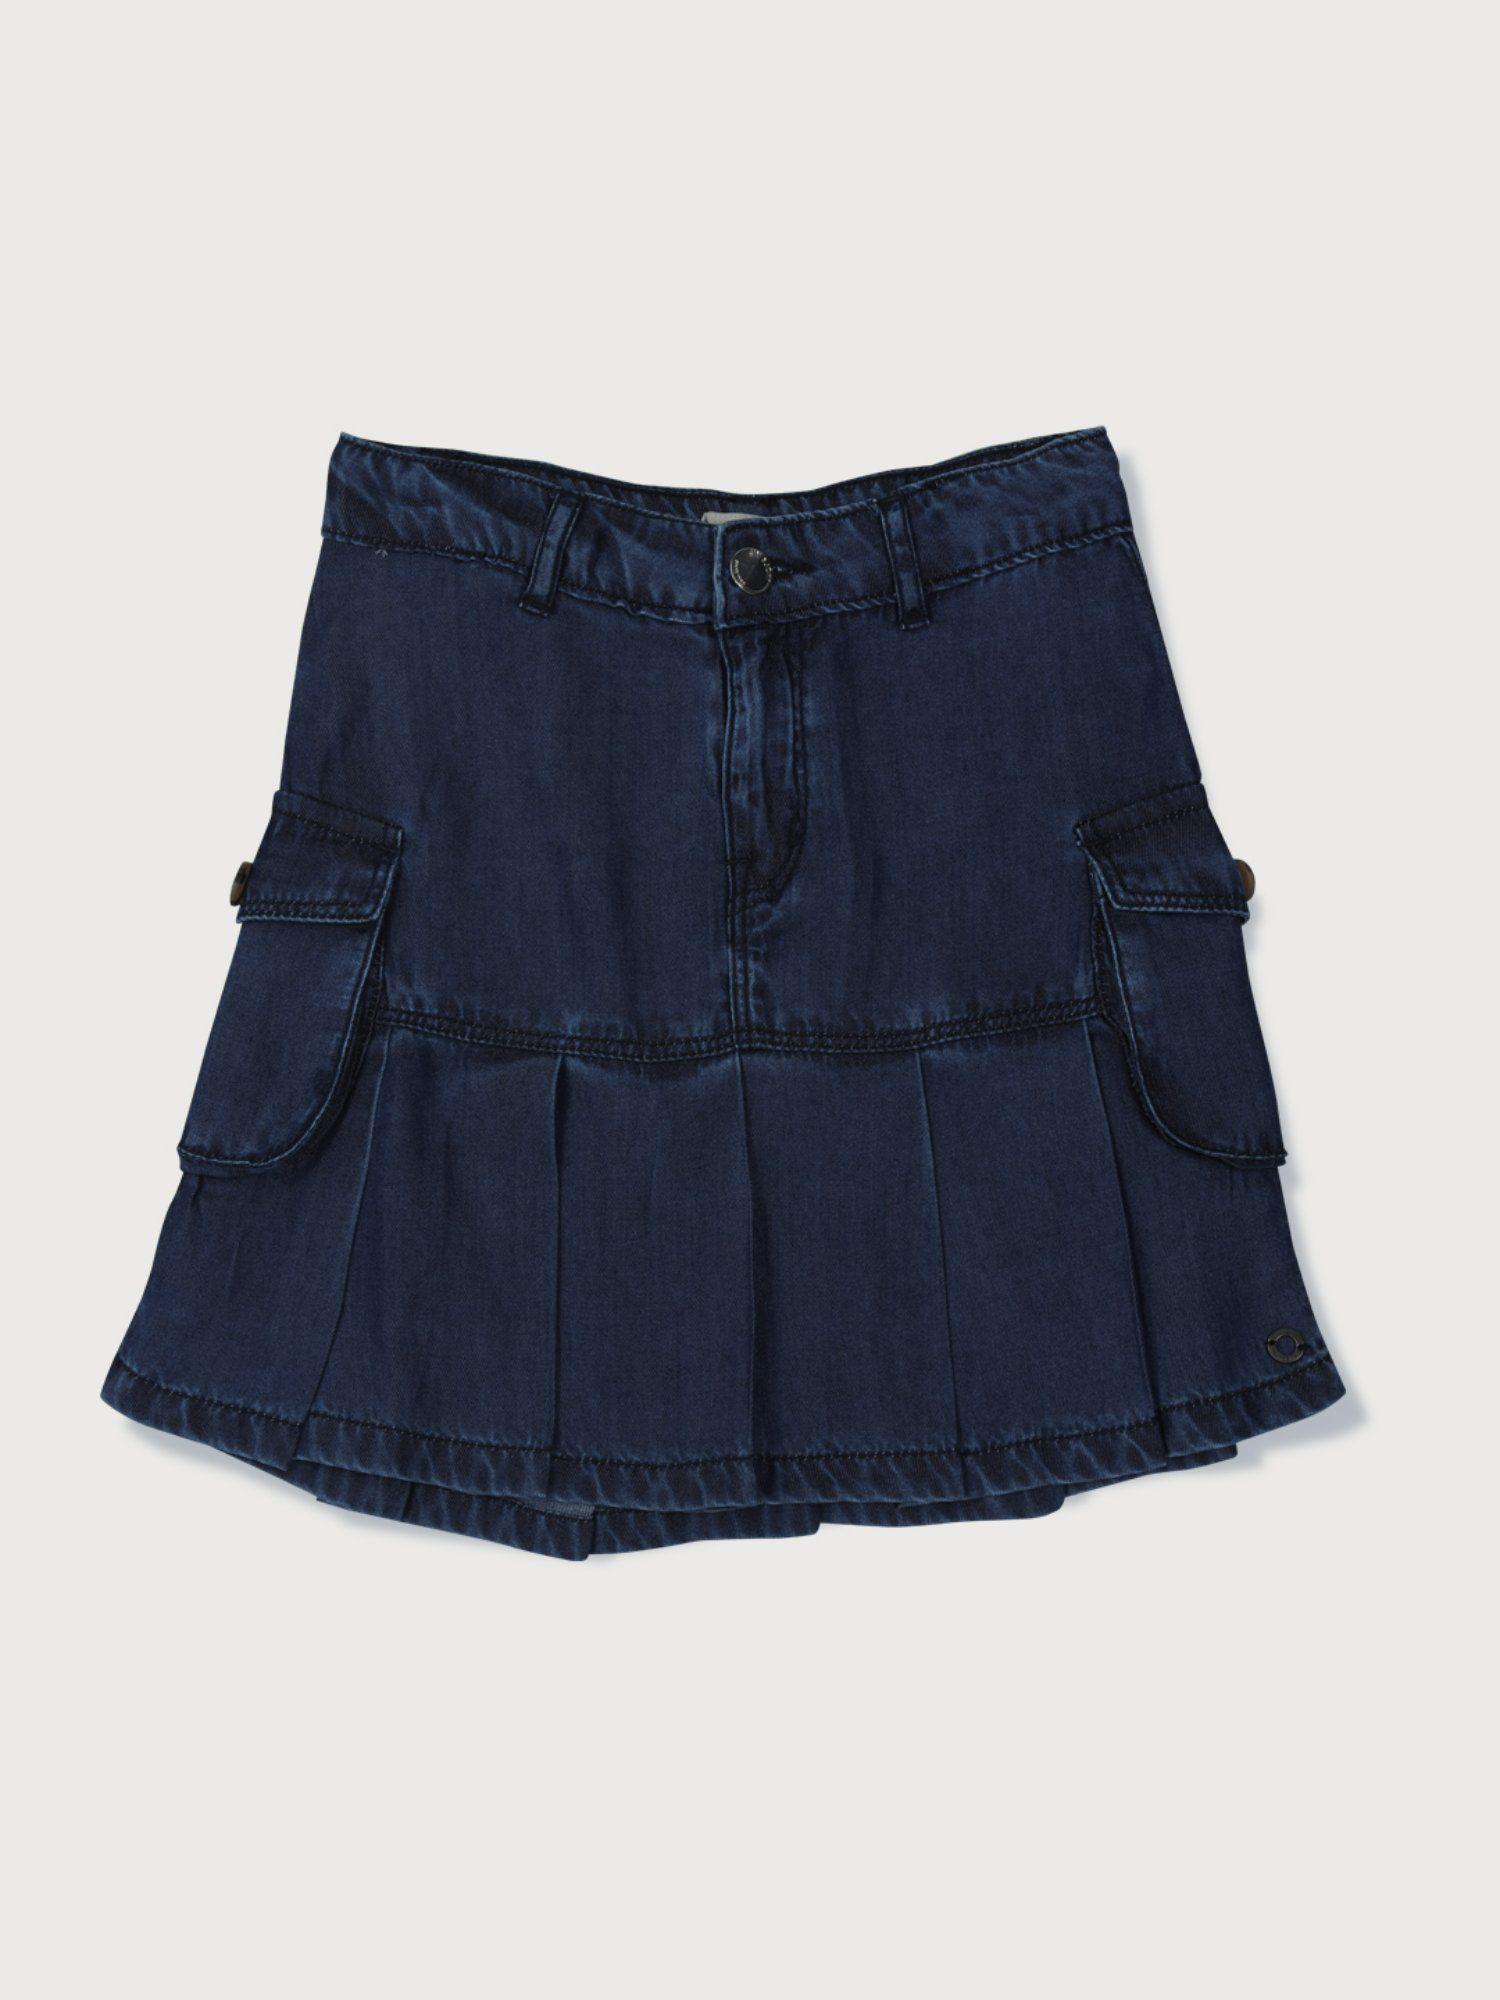 girls navy blue denim solid skirt